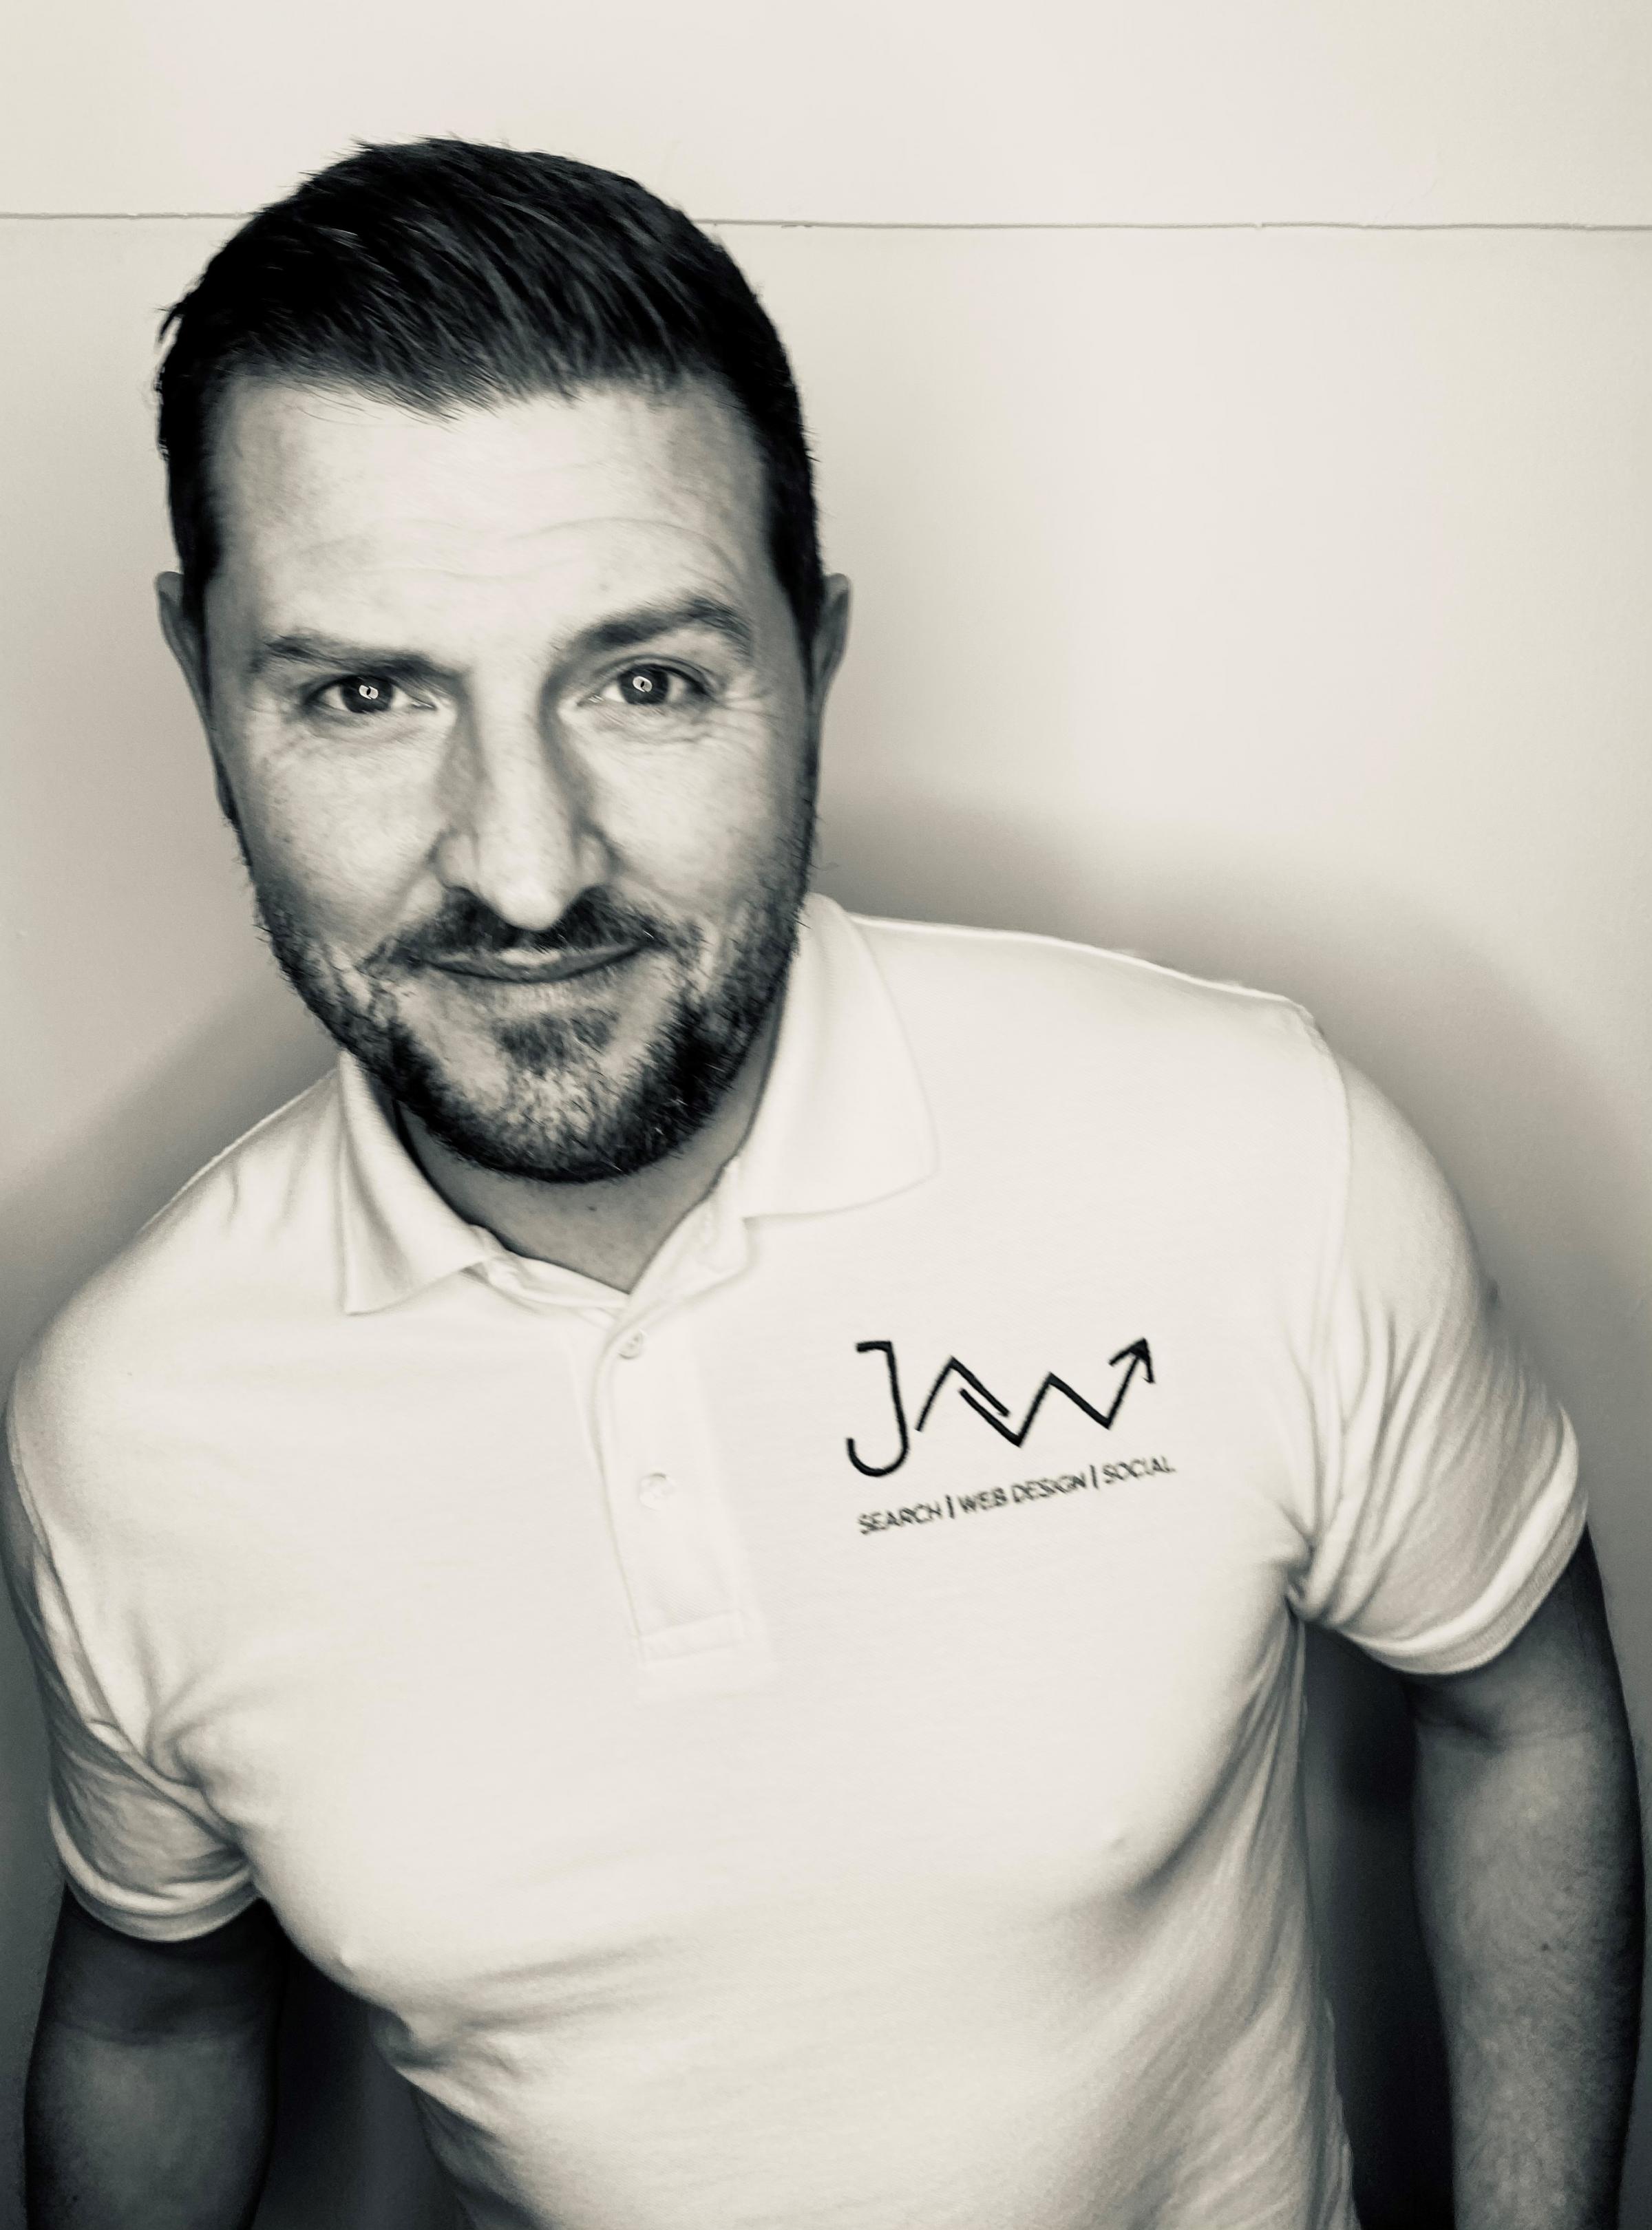 JAW Digital managing director Wayne Berry